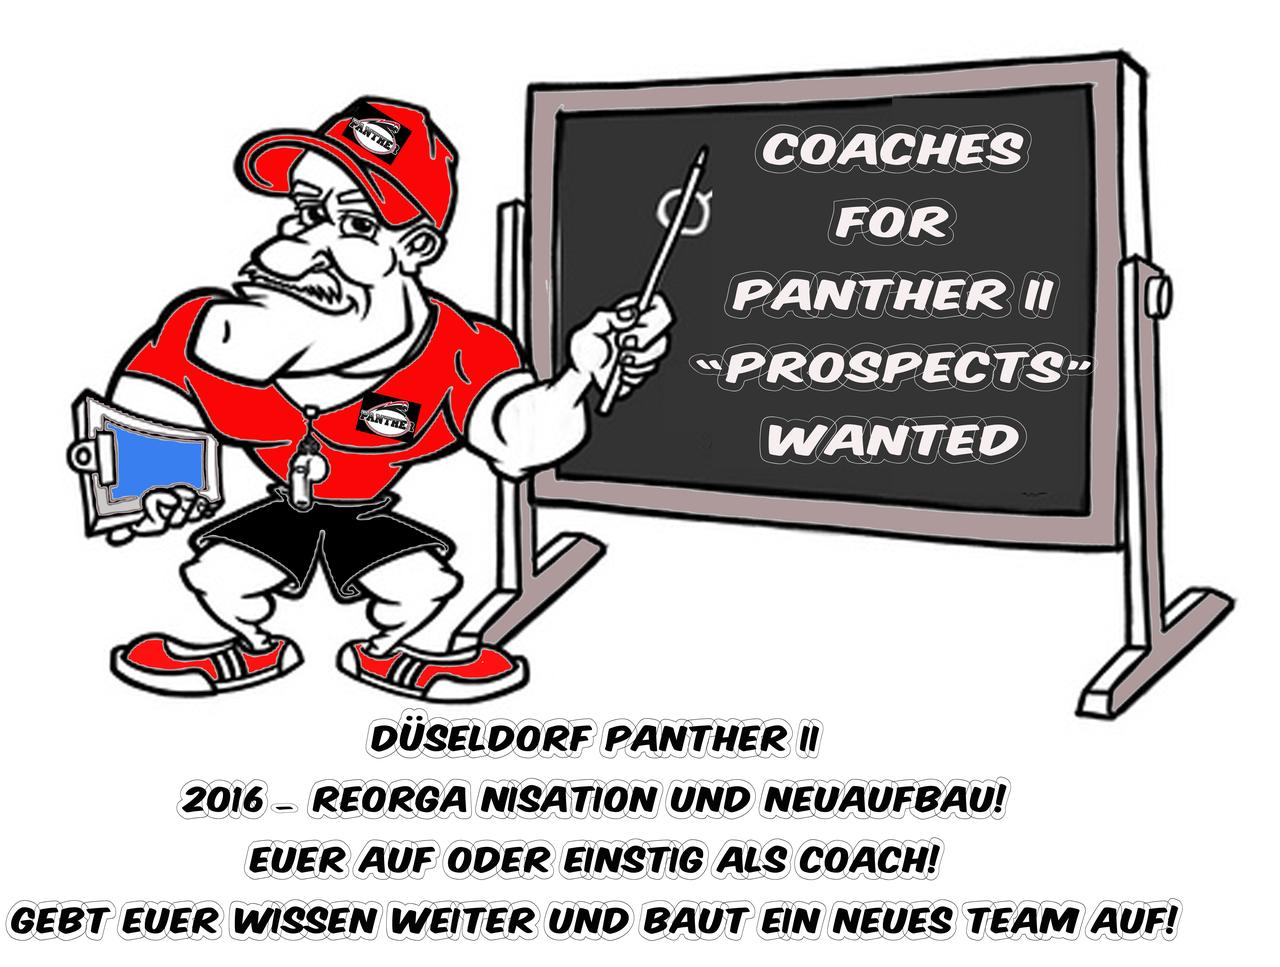 Coaching Staff für Panther II gesucht